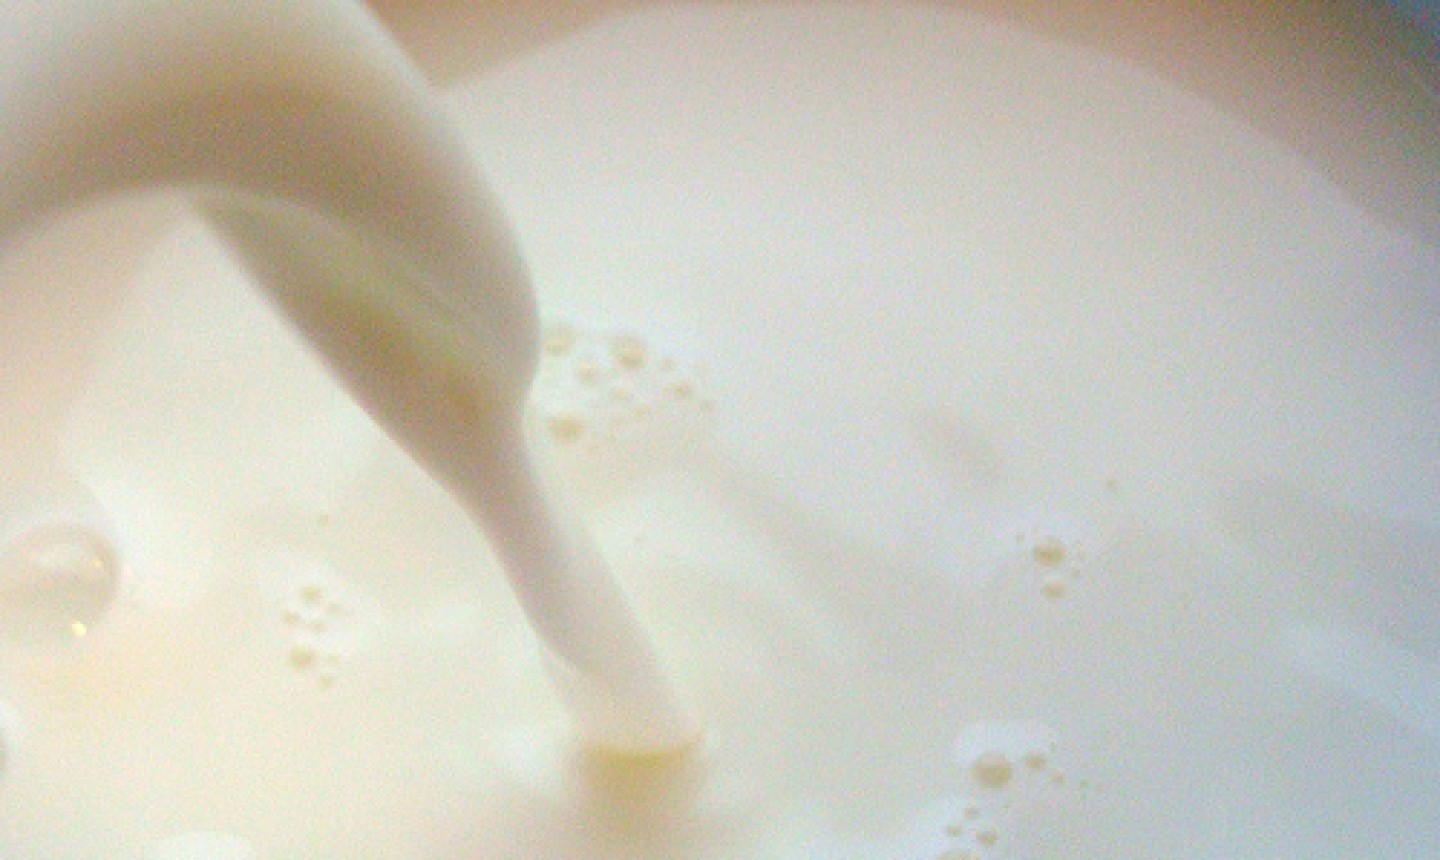 Mixing the Milk